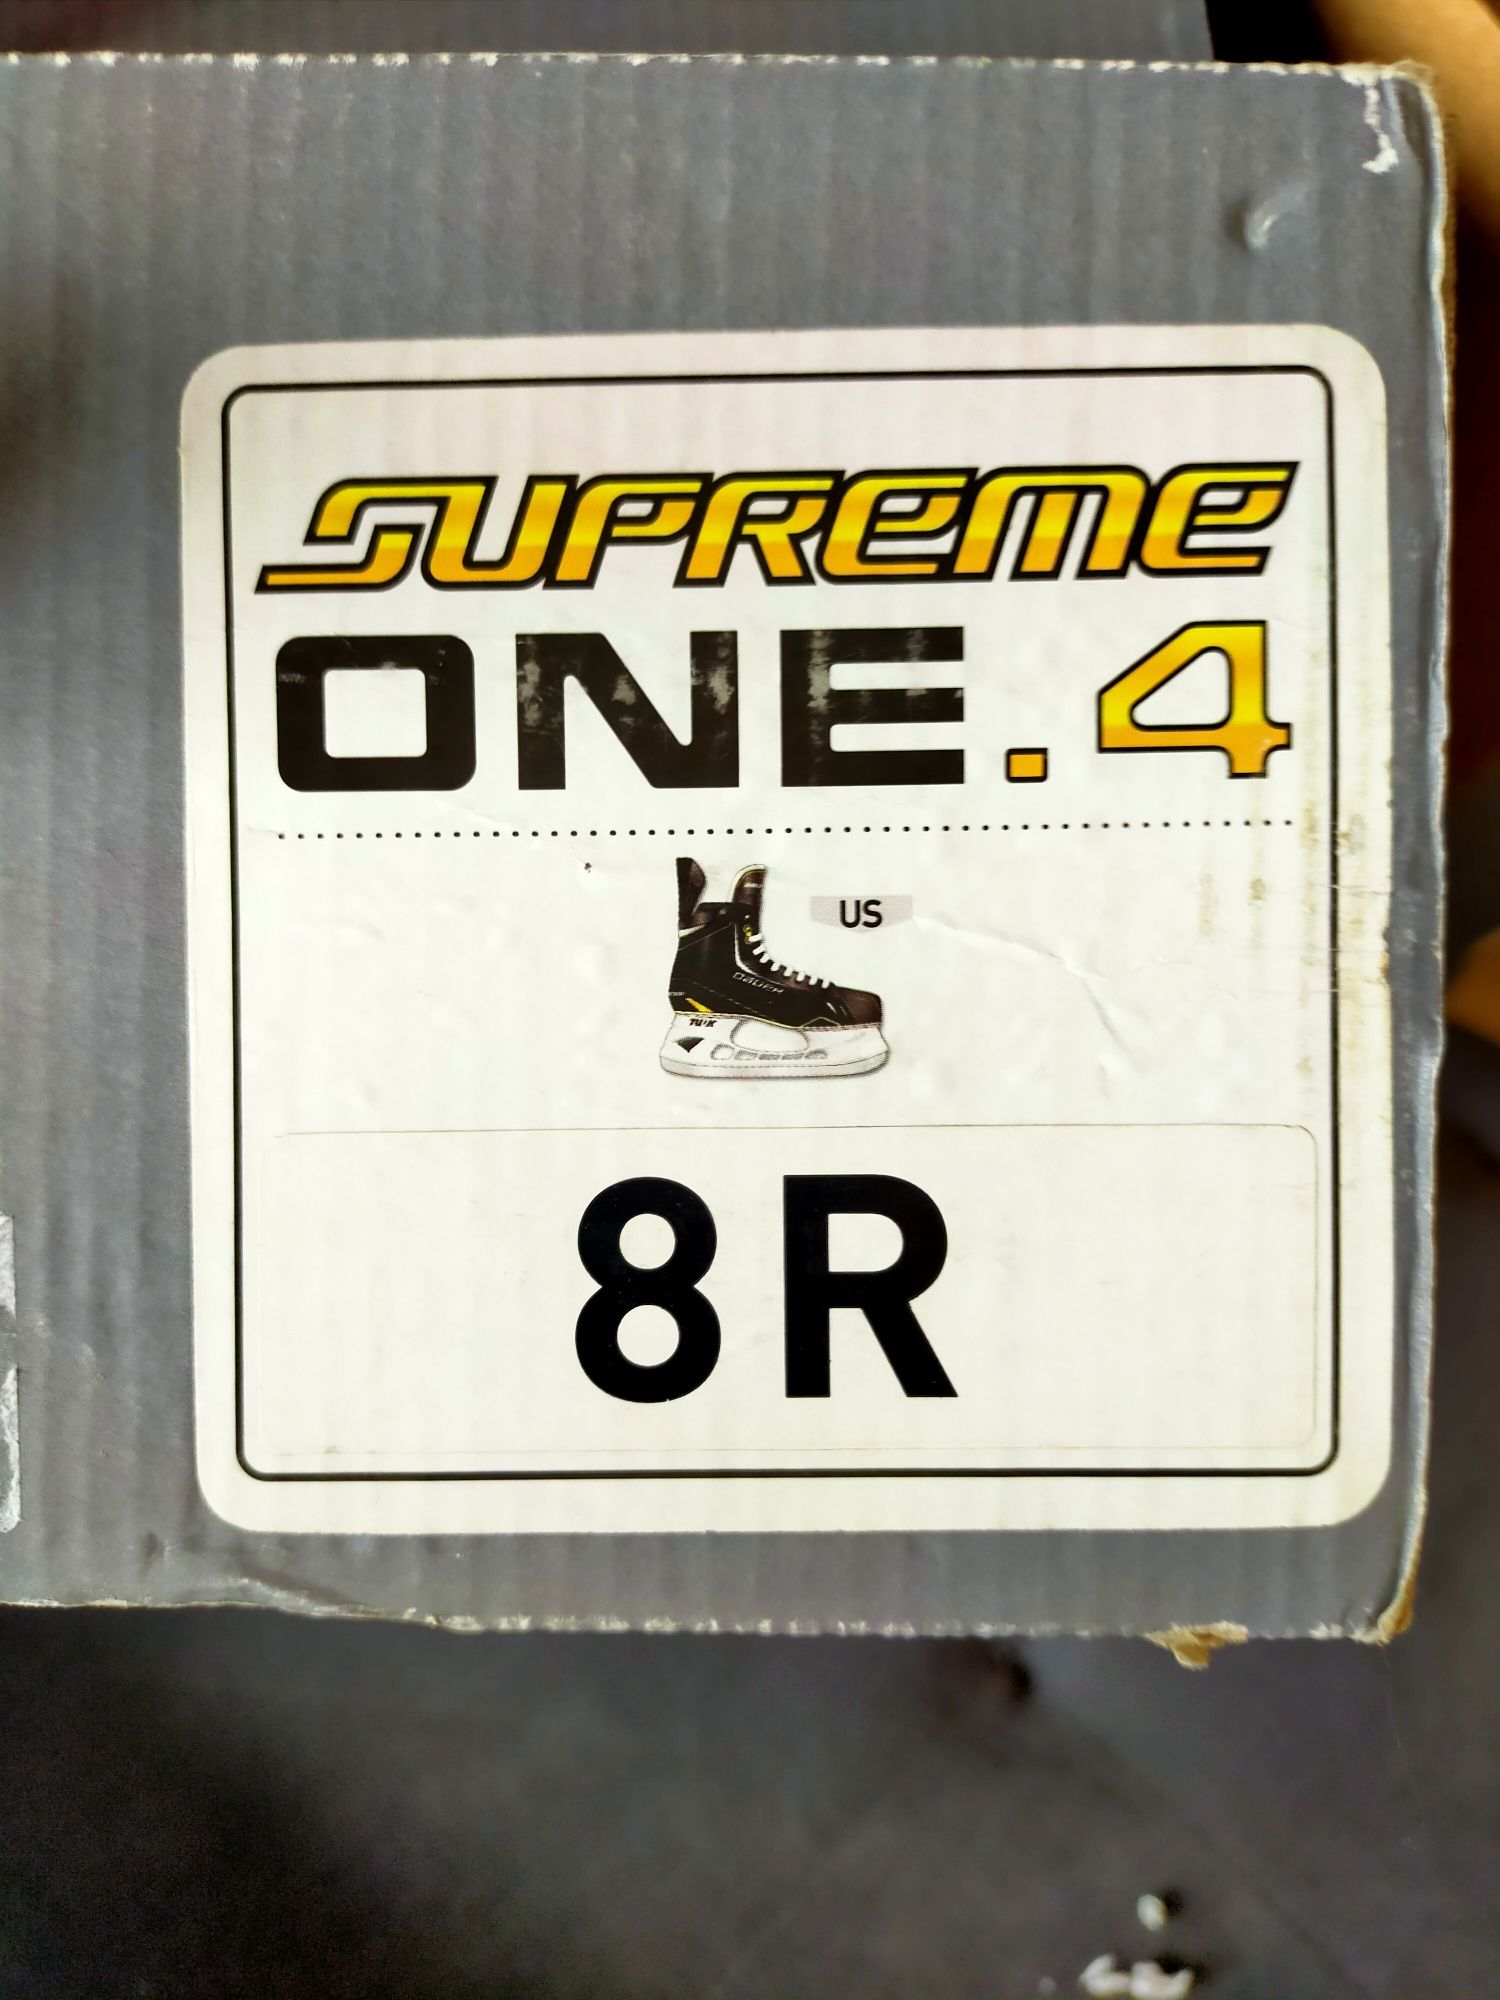 Sprzedam łyżwy Bauer Supreme One.4.8R Model dla Pań.